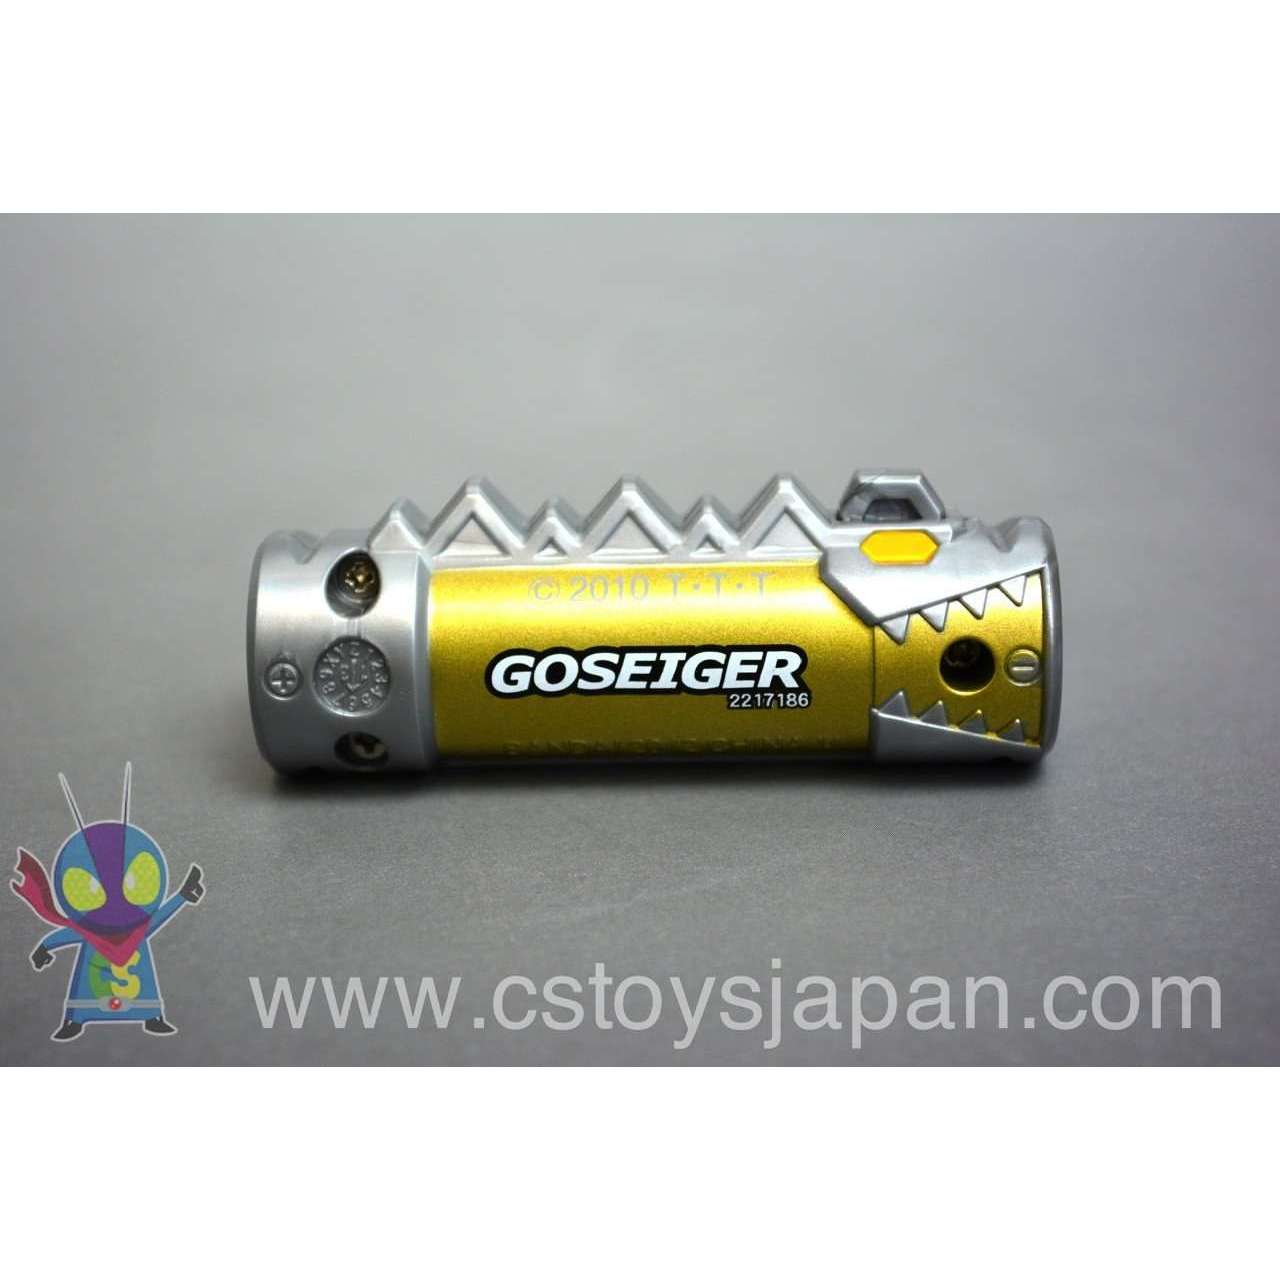 [LOOSE] Kyoryuger: Capsule Toy Zyudenchi EX Goseiger | CSTOYS INTERNATIONAL